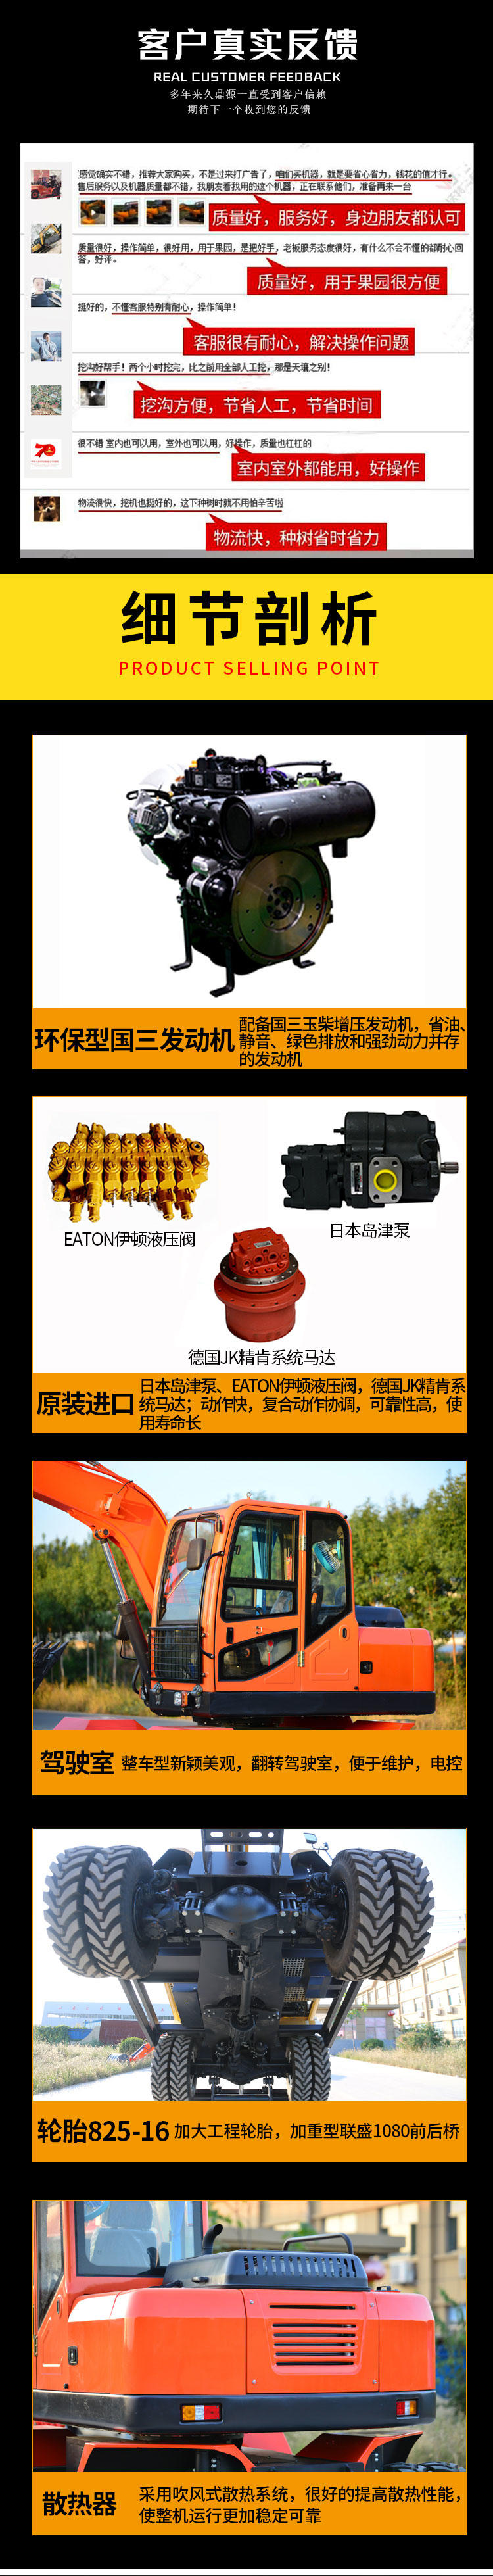 厂家供应8吨小型轮式挖掘机 湖南地区小挖机供应商示例图5